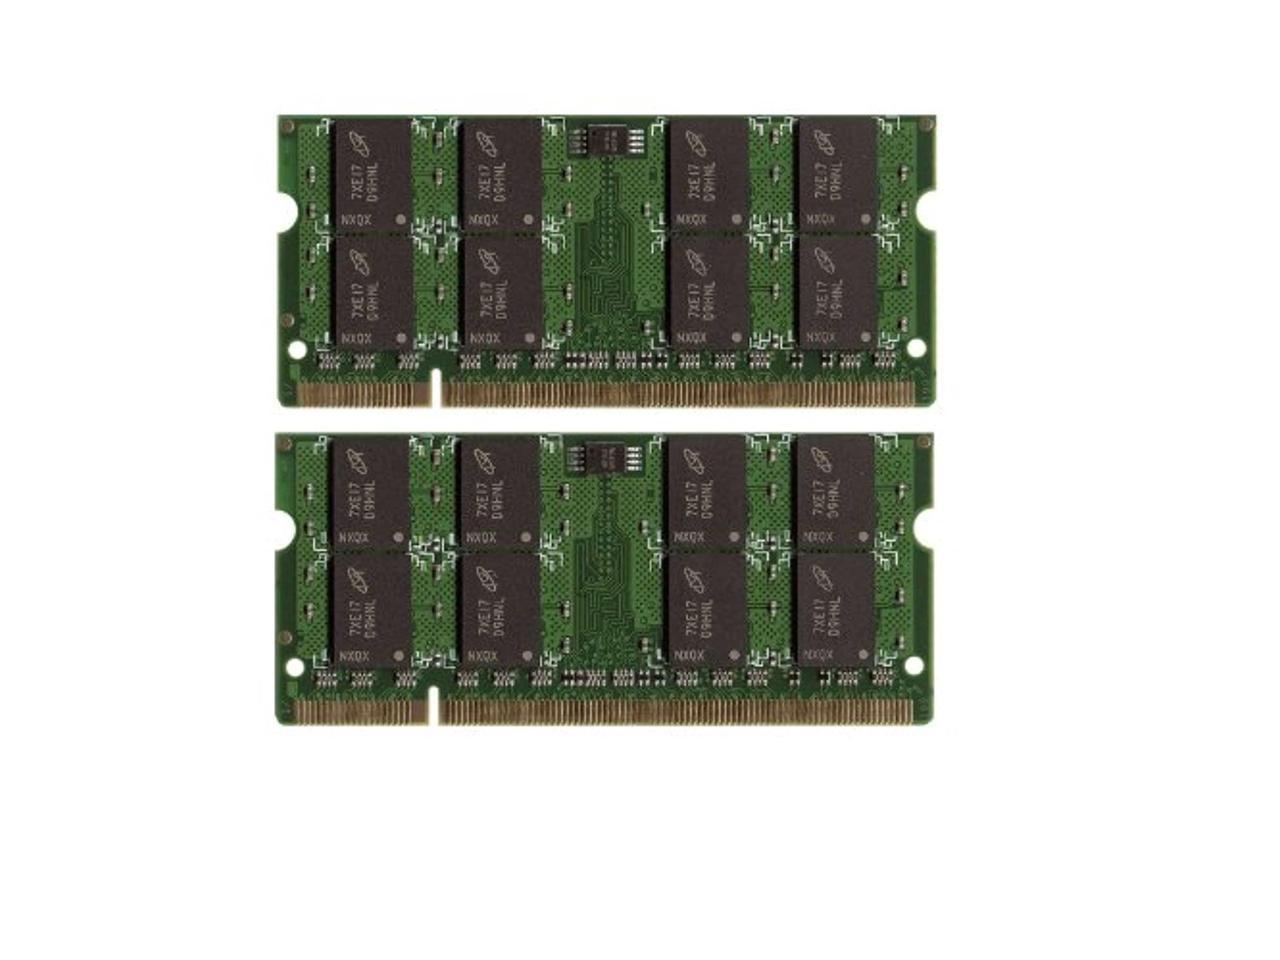 NEW 4GB Module DDR2-667 SODIMM Laptop Memory PC2-5300